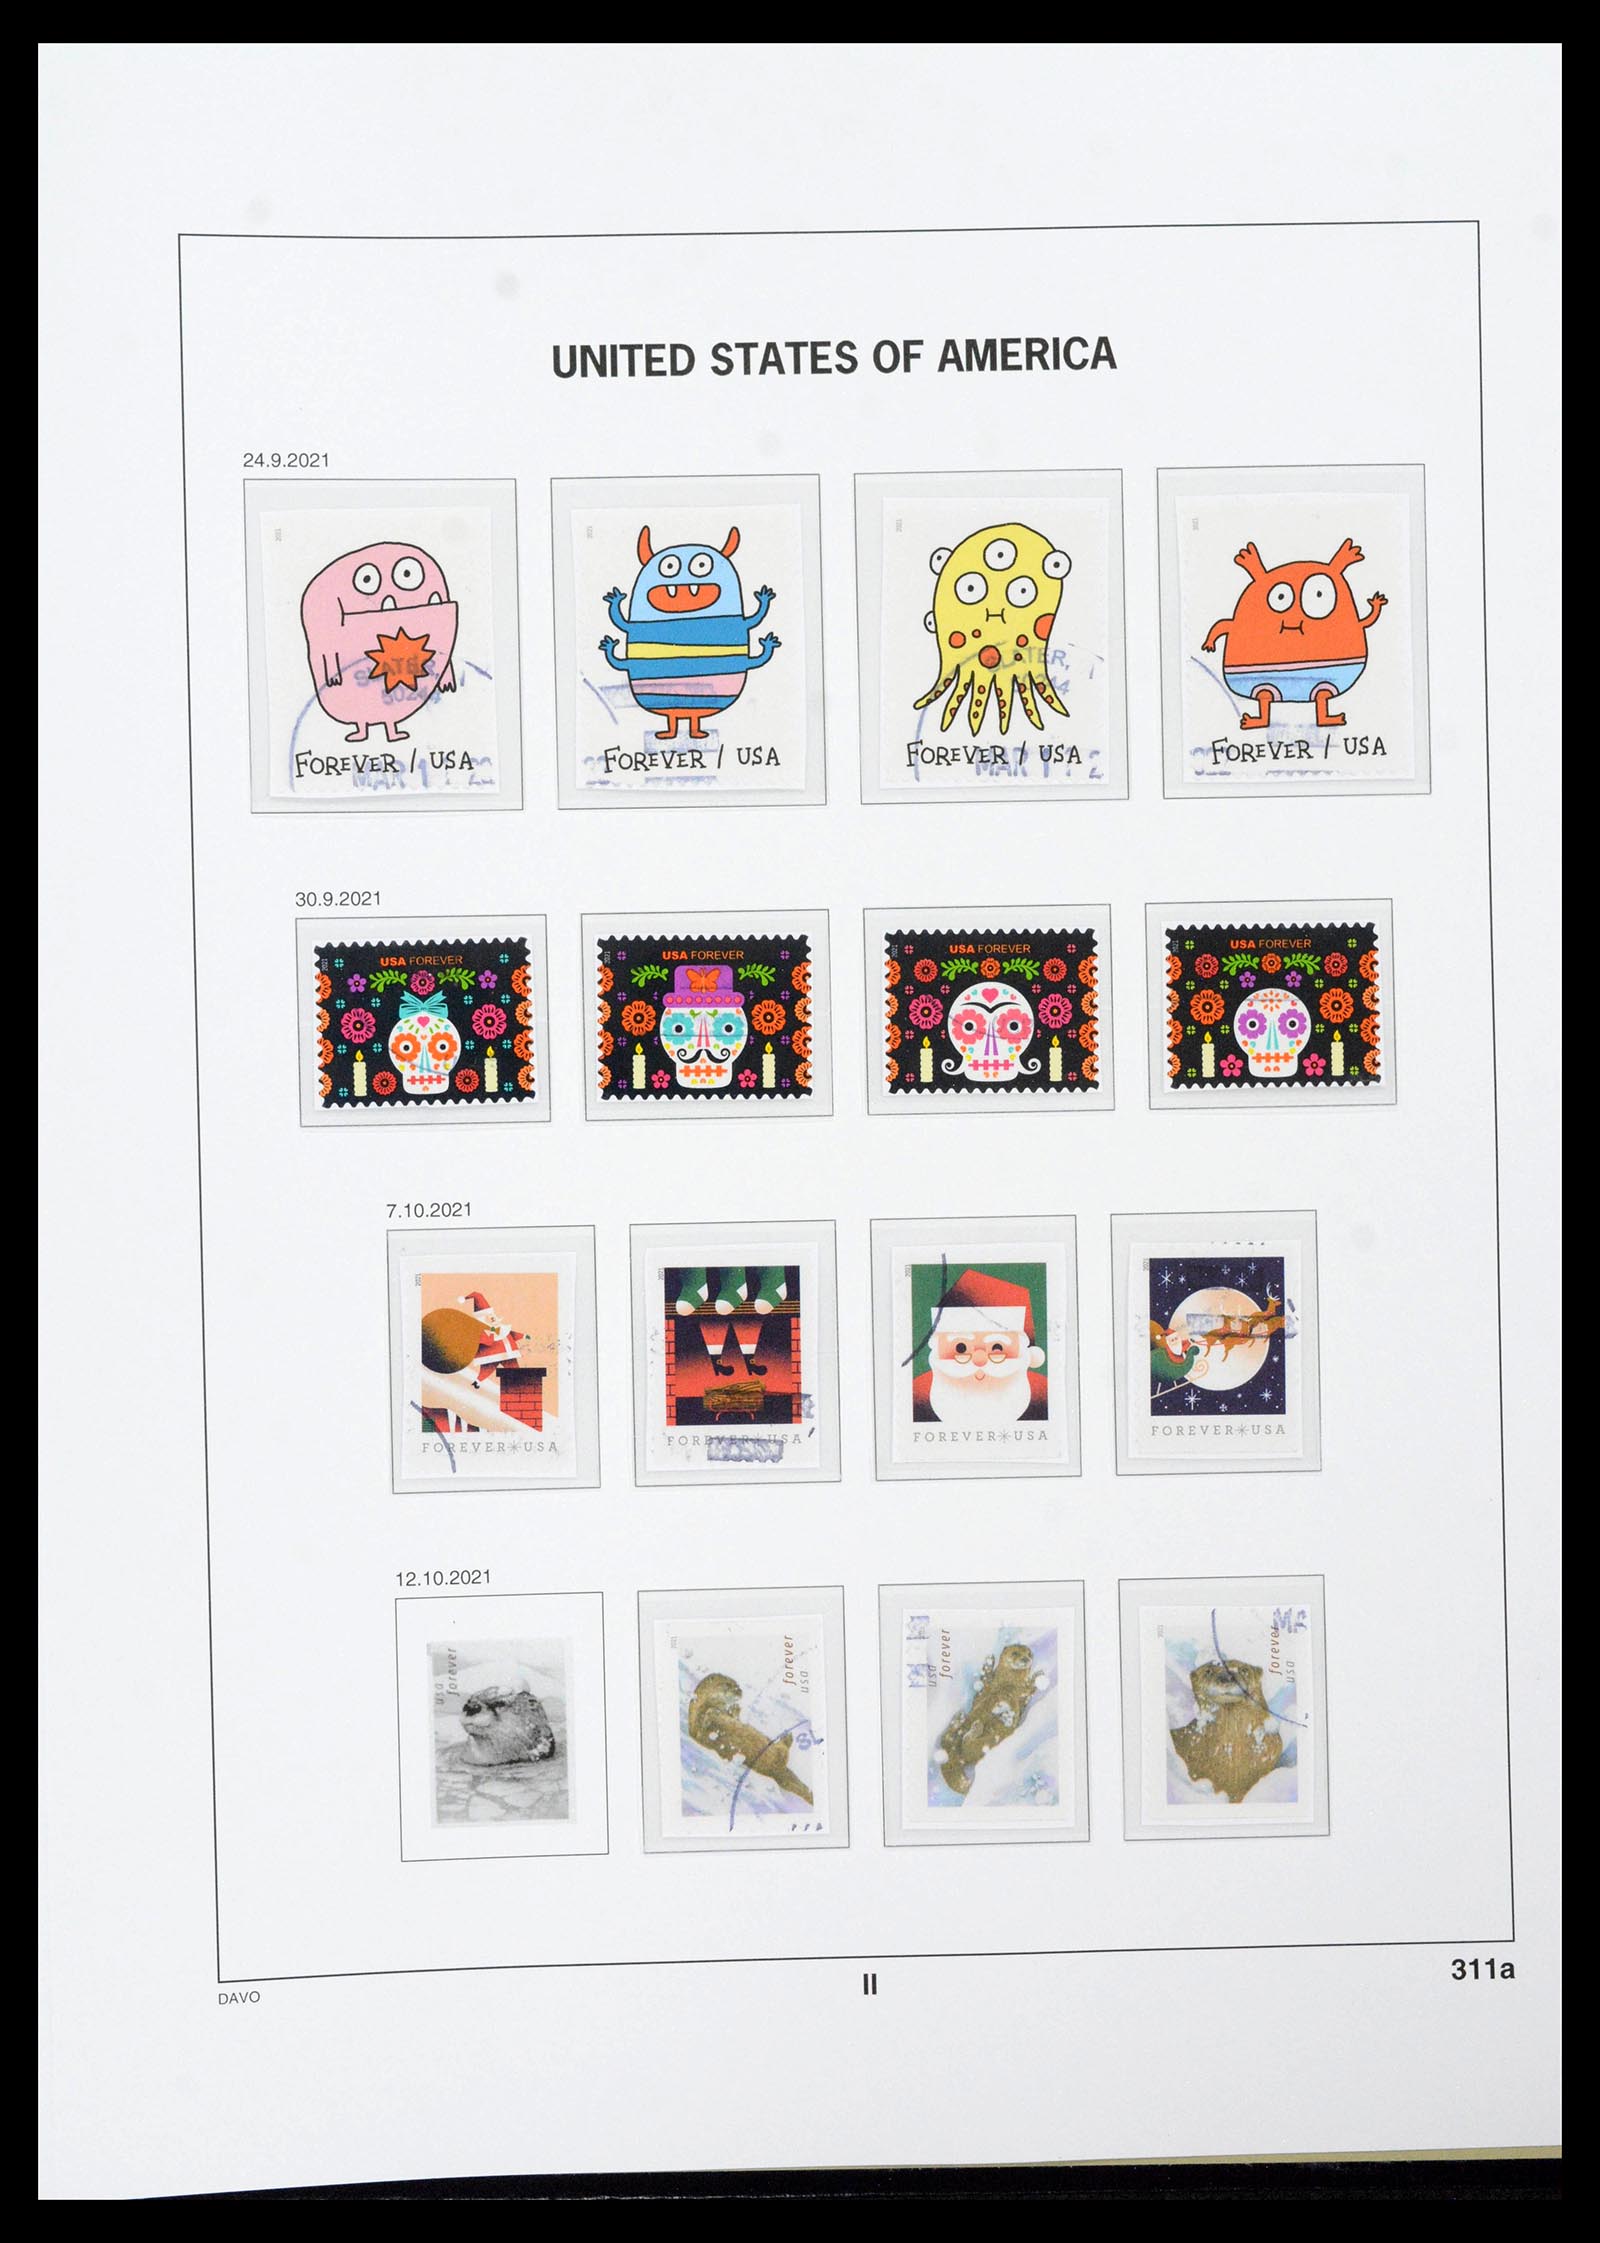 39349 0473 - Stamp collection 39349 USA 1989-2021!